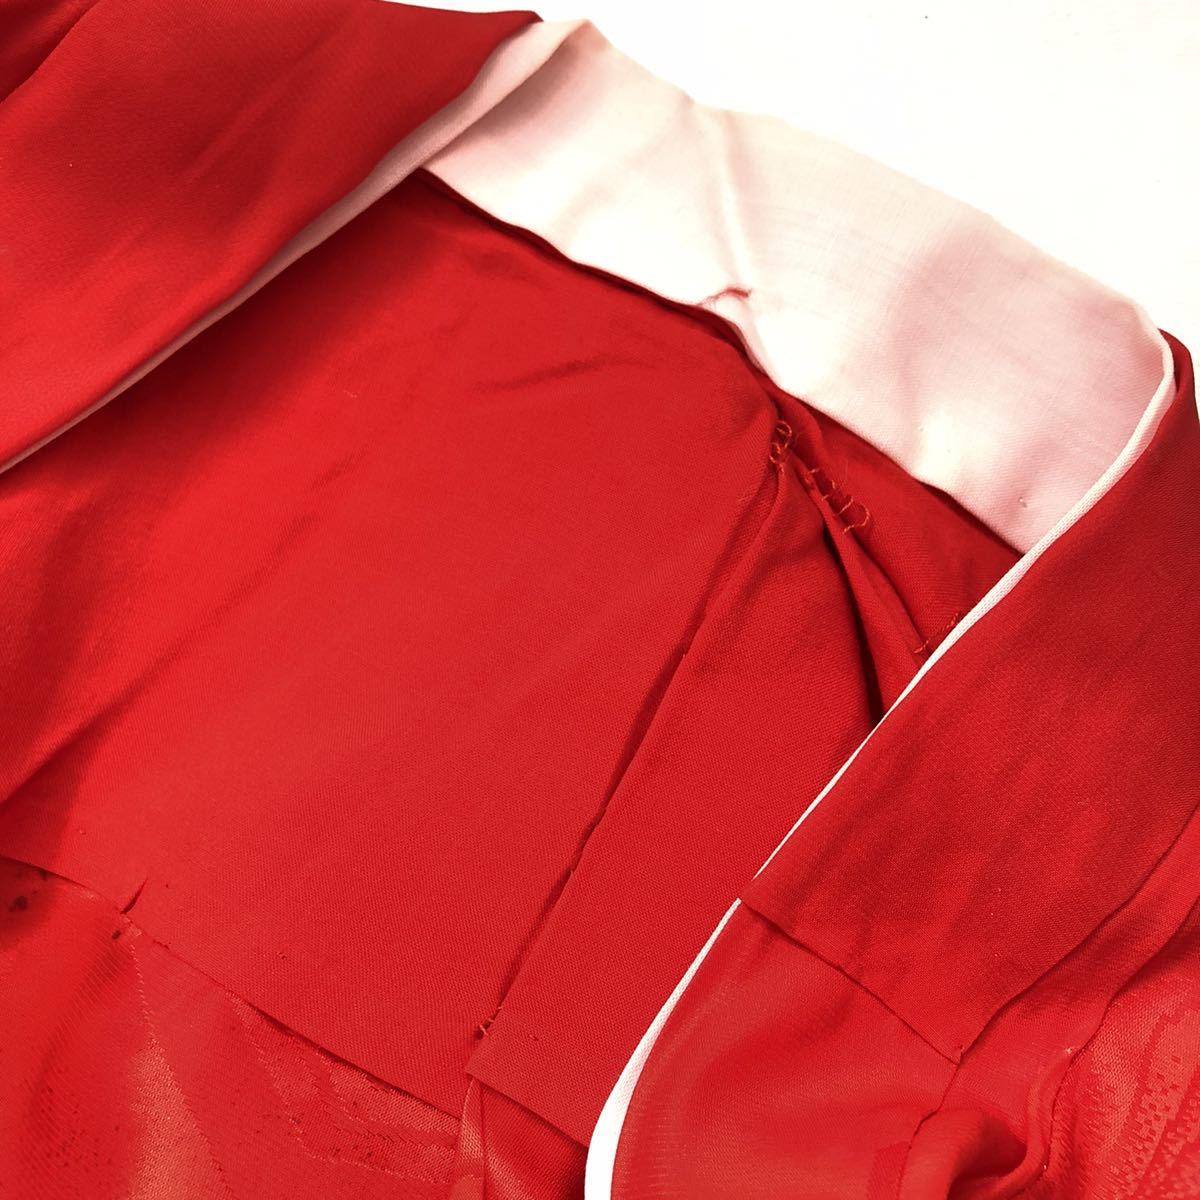 [ тканый .R] retro длинное нижнее кимоно девочка журавль красный фотосъемка длина рукава 38. ширина 34. длина одежды 76.* KIMONO JAPAN* включение в покупку возможно * o4141